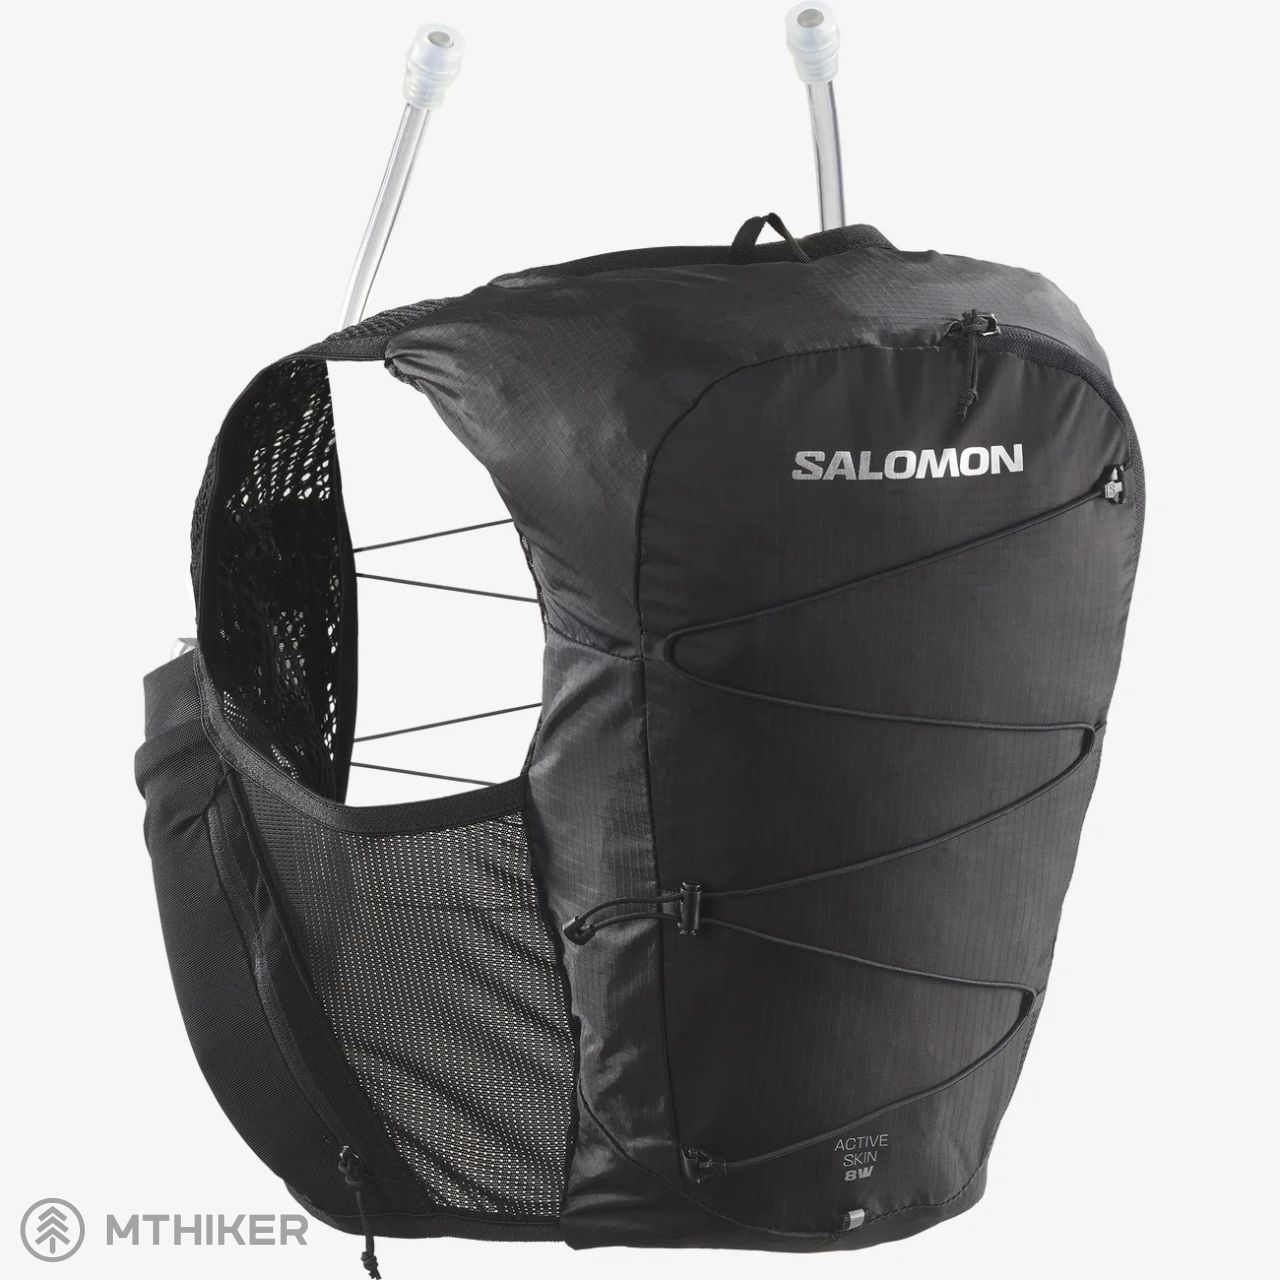 Per ongeluk slaap Vervullen Salomon ACTIVE SKIN 8 women's backpack, black - MTBIKER.shop